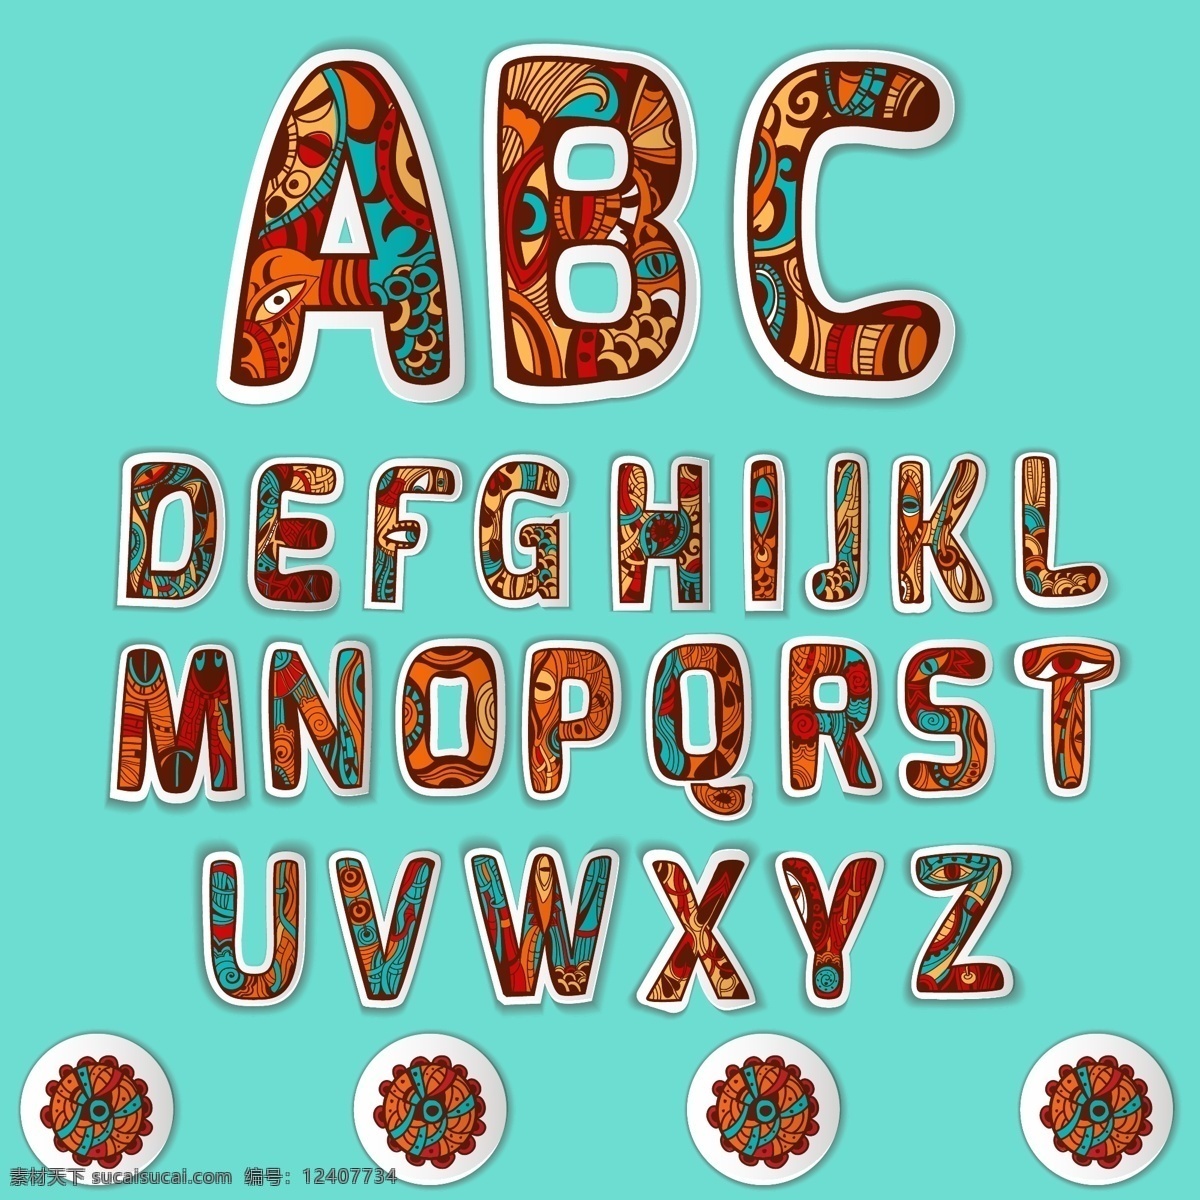 英文字体 字母设计 彩色字母 英文设计 学习用品 文字 文字设计 设计素材 背景 卡通字体 英文 英语 字母 大写字母 花纹背景 少数民族花纹 生活百科